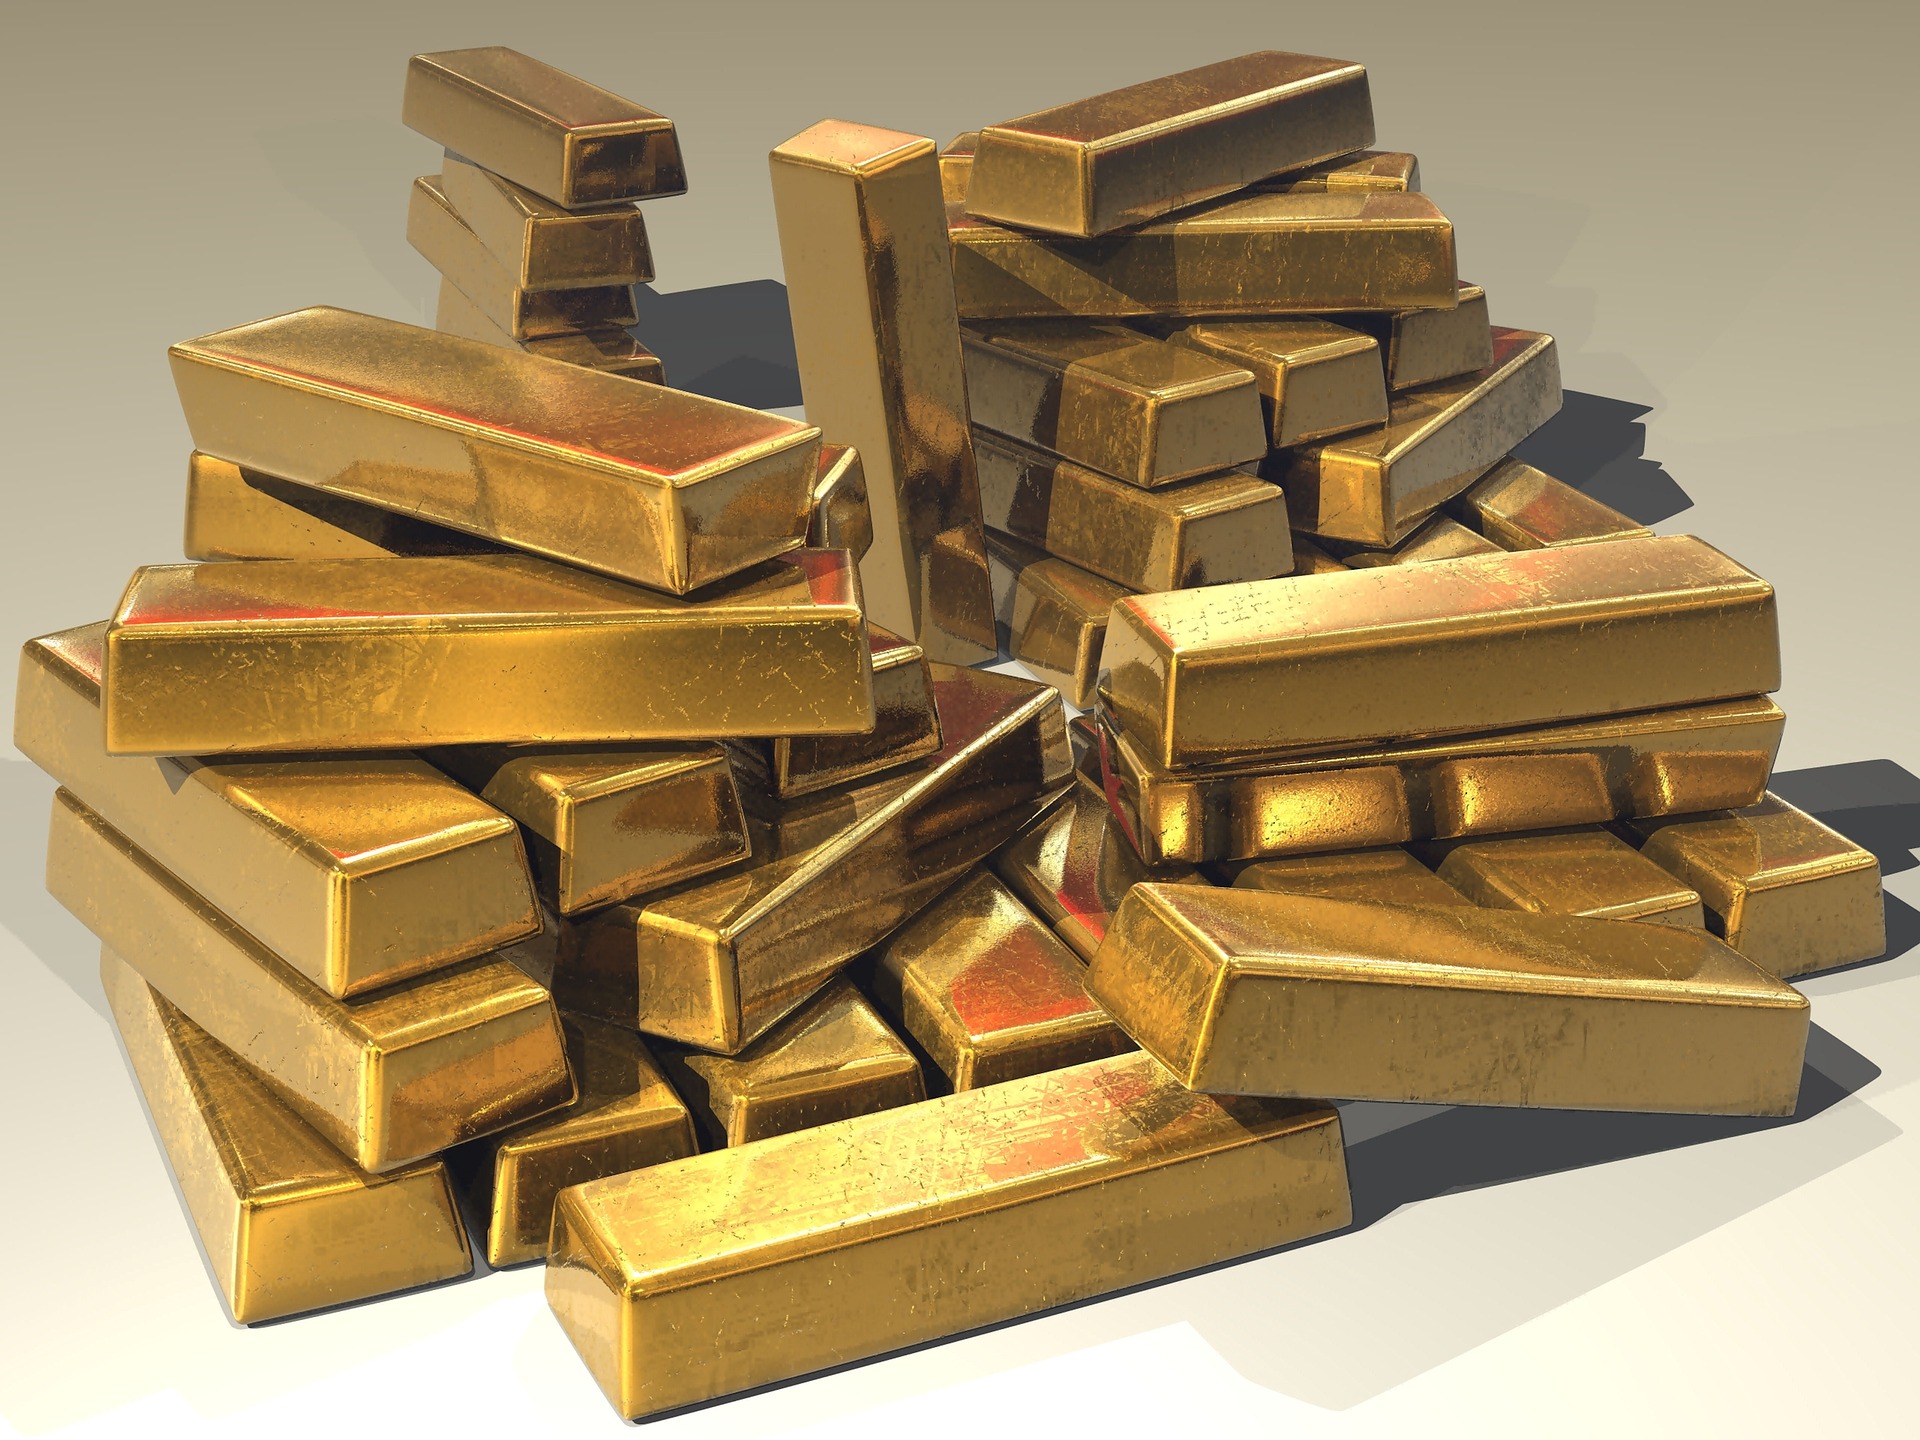 Digiralna valuta zaštićena zlatom